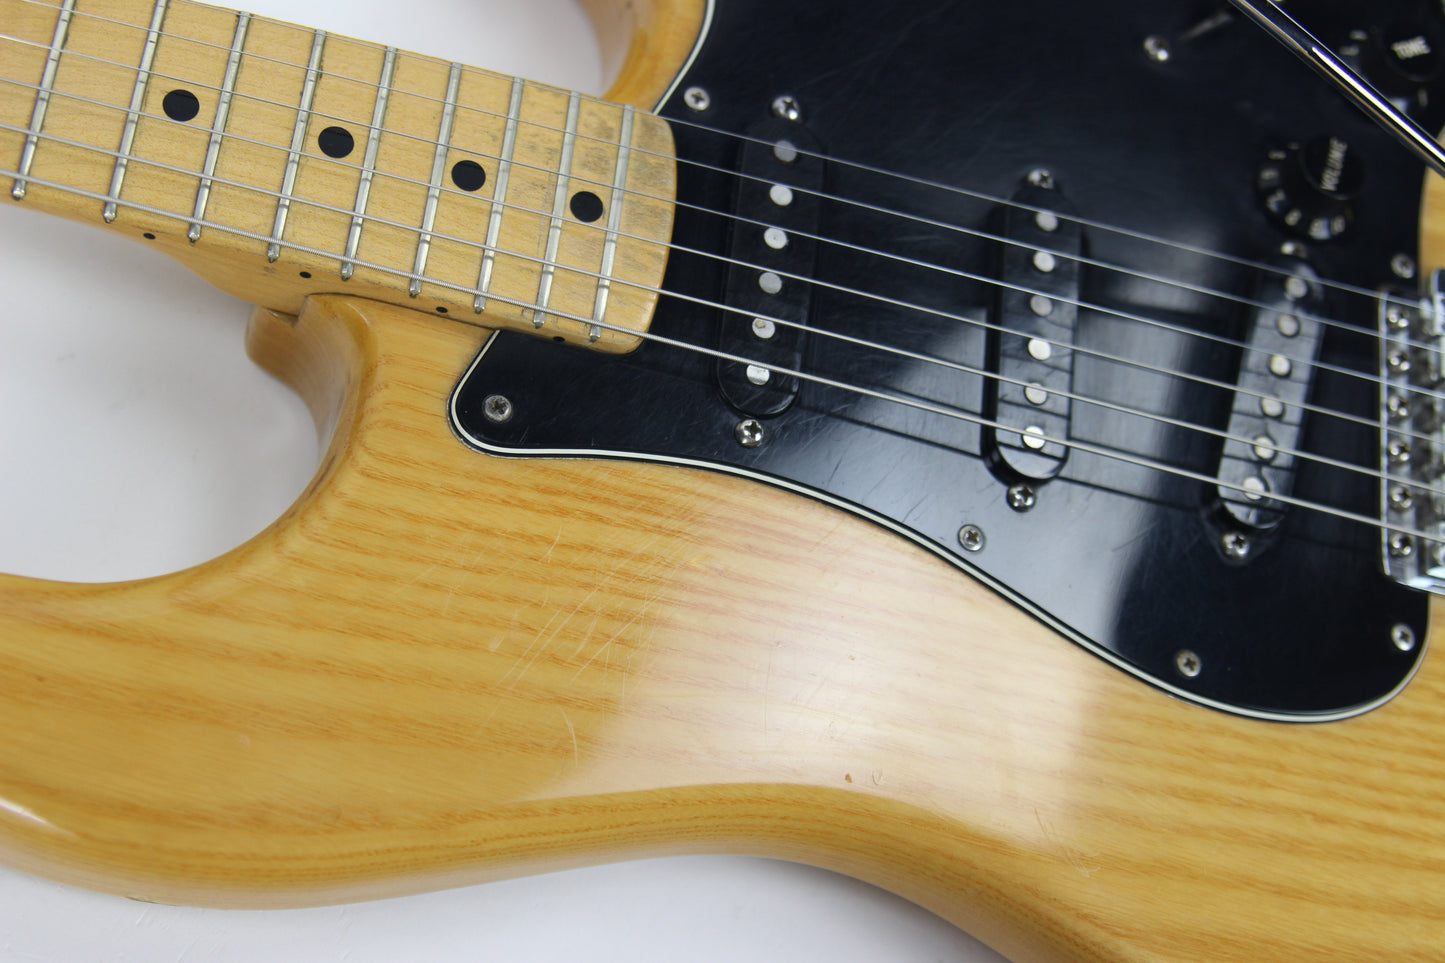 1979 Fender Stratocaster Natural Ash w/ Maple Neck! ALL ORIGINAL 1980 Vintage!